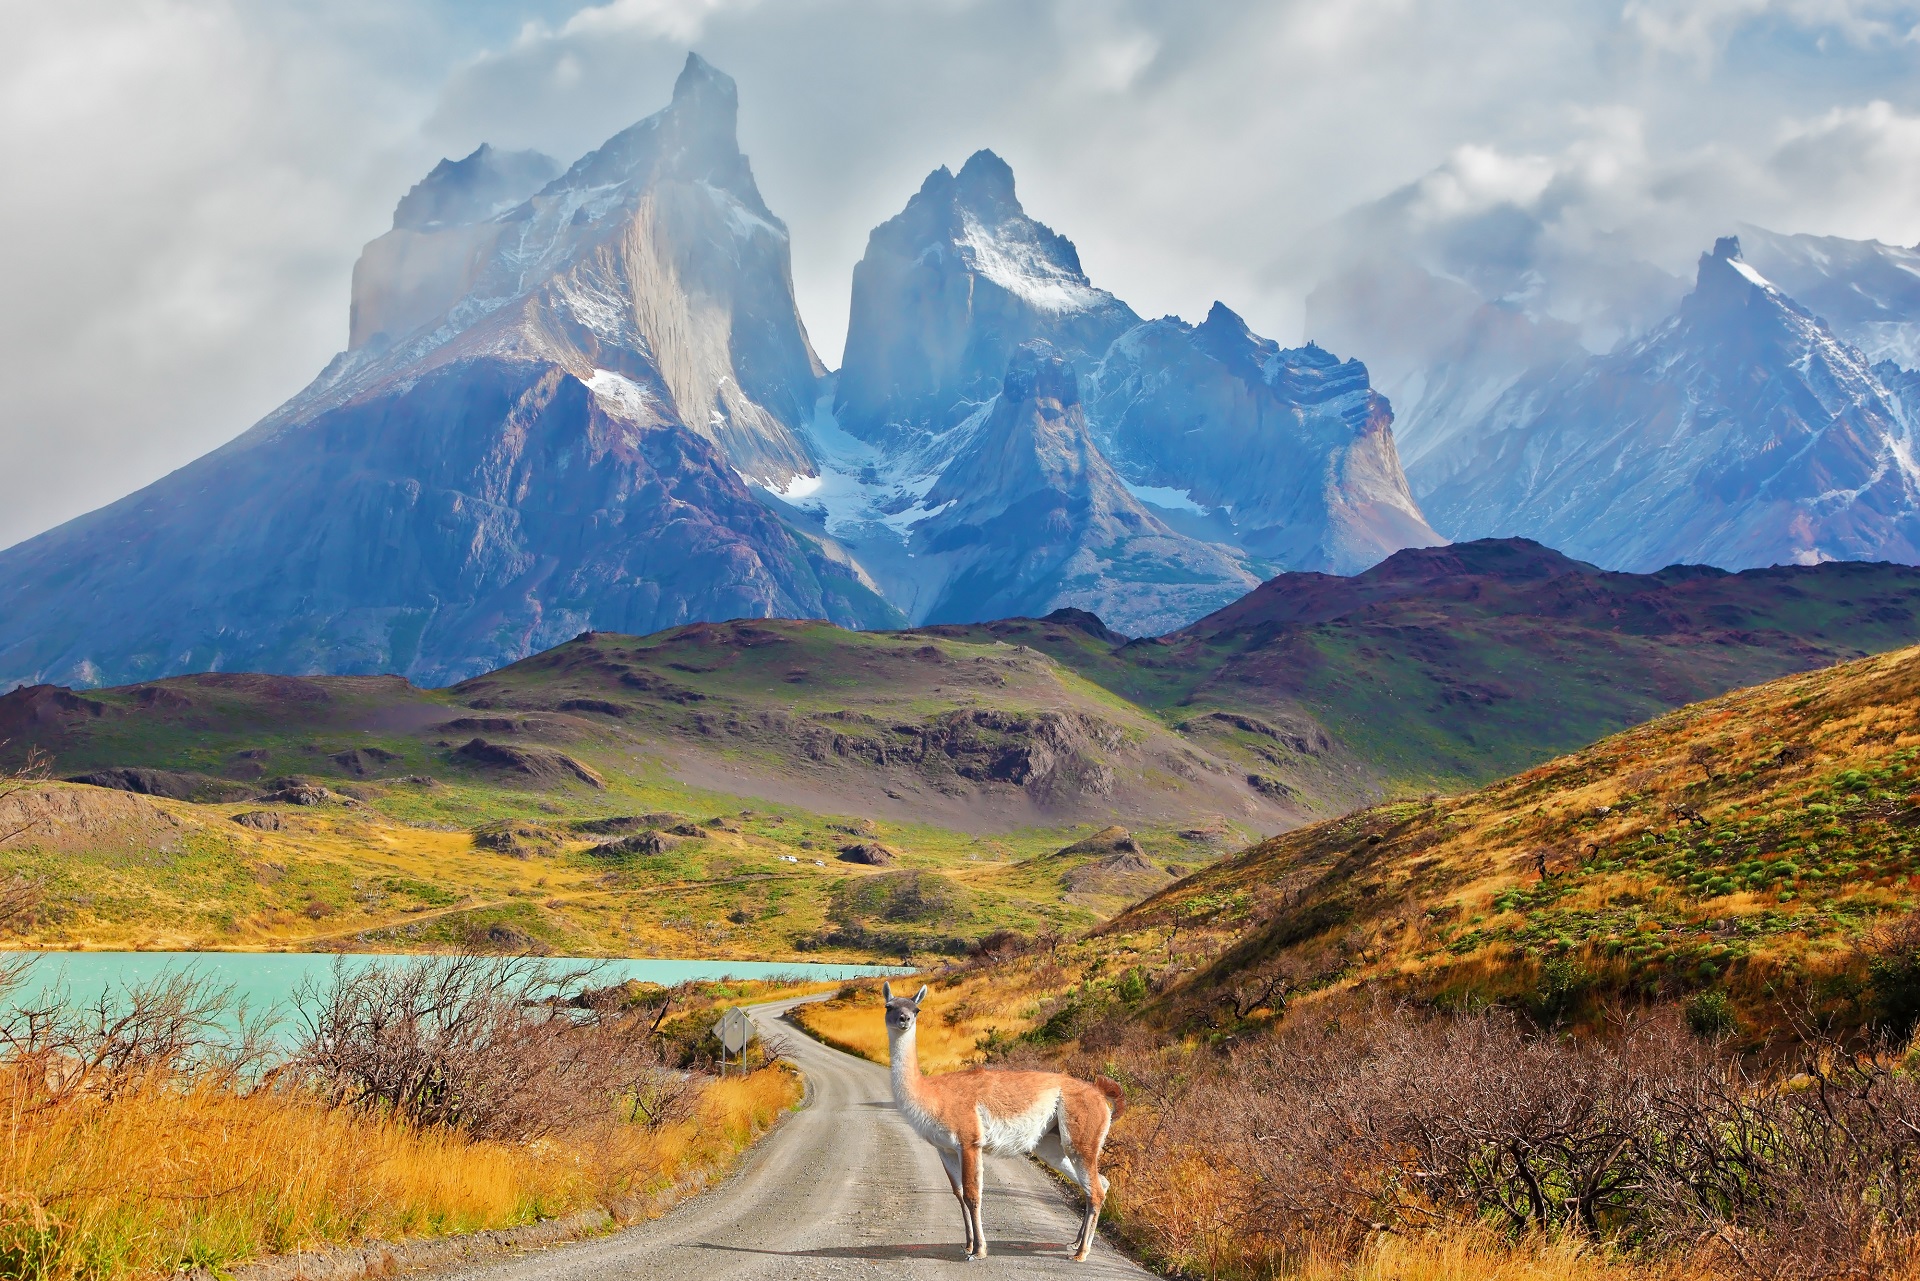 Les pics de Los Kuernons, au-dessus du lac Pehoé, au sud du Chili. Dans cette étude, les personnes vivant le plus au sud du Chili, les plus éloignées de l’équateur, semblaient plus enclines à l’hypertension. © kavram, Shutterstock